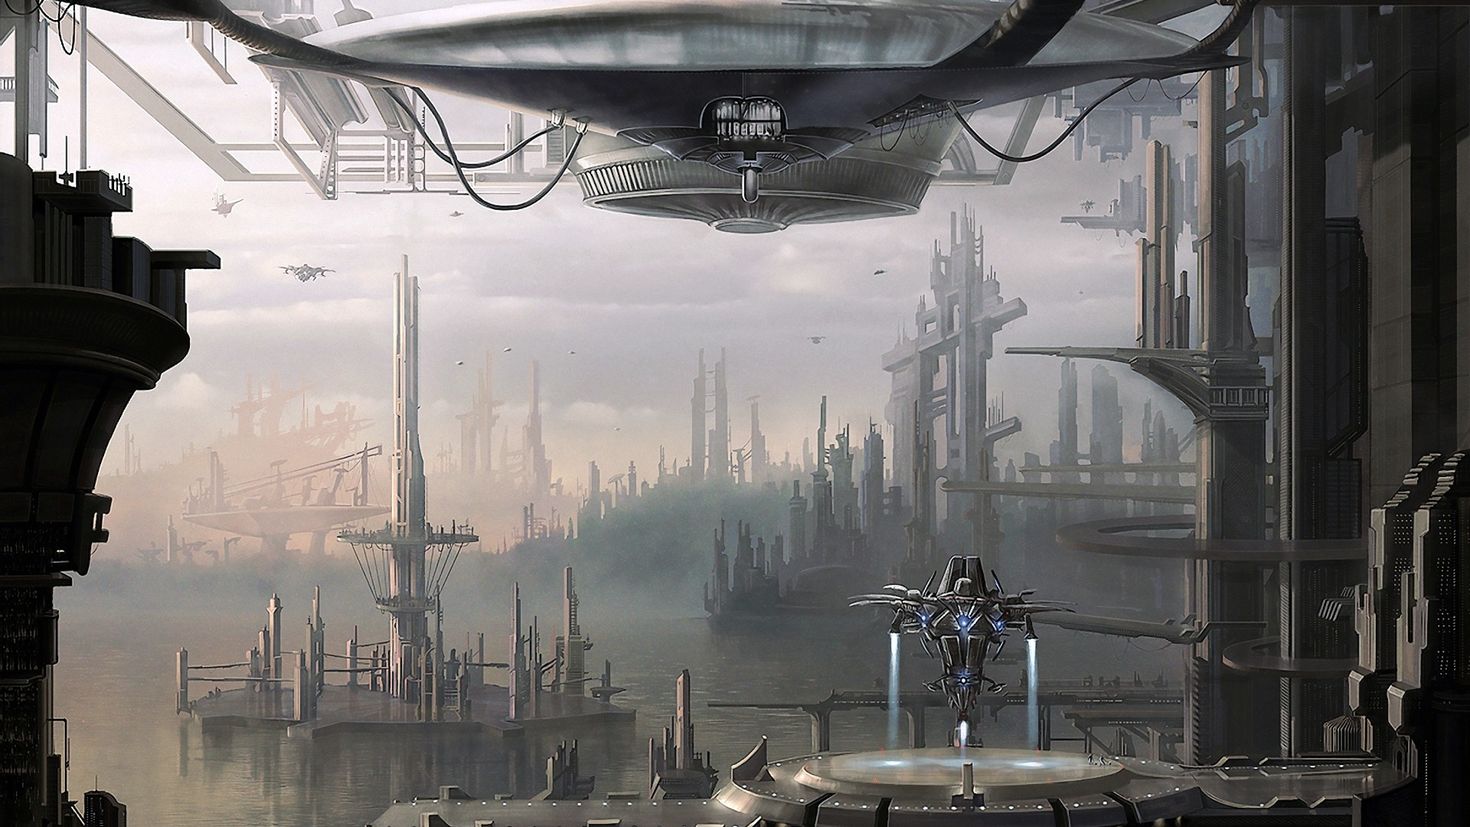 Мир научной фантастики. Корусант корабль. Экуменополис Корусант. Научно-фантастический город (Sci-Fi City) Universal Singgapor. Фантастические города будущего.